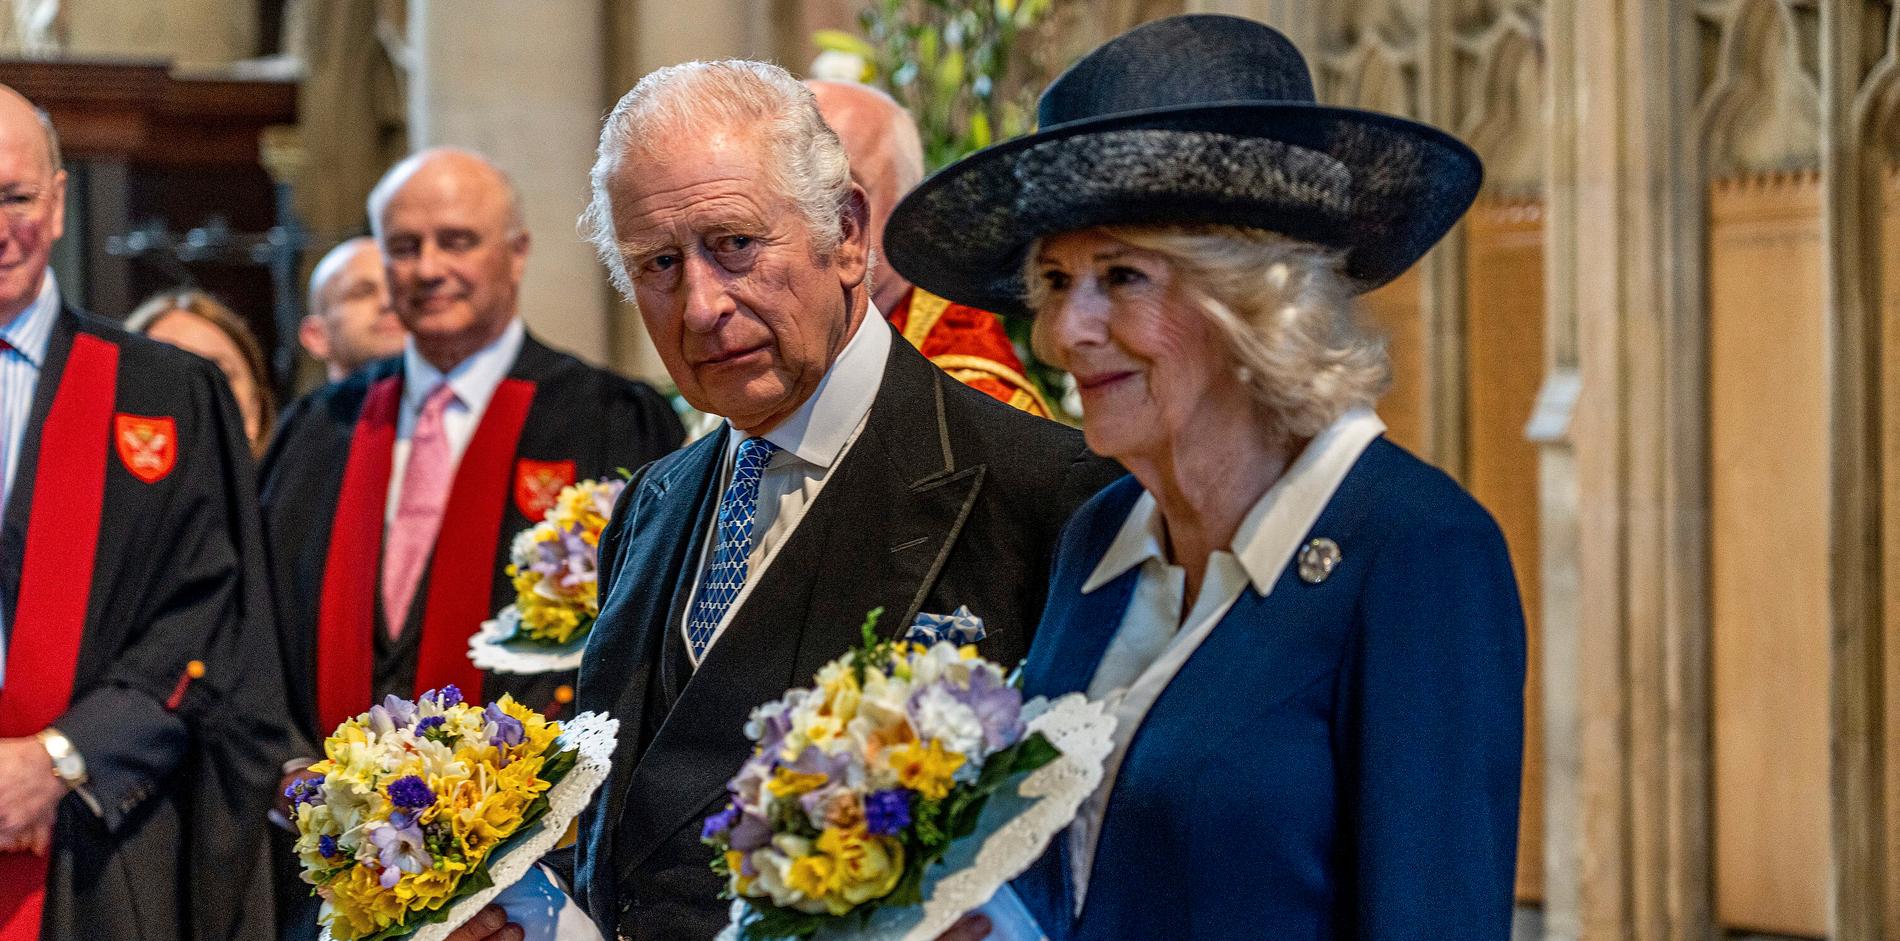 Charles III kröns till kung och hans fru Camilla blir drottning i London under lördagen.